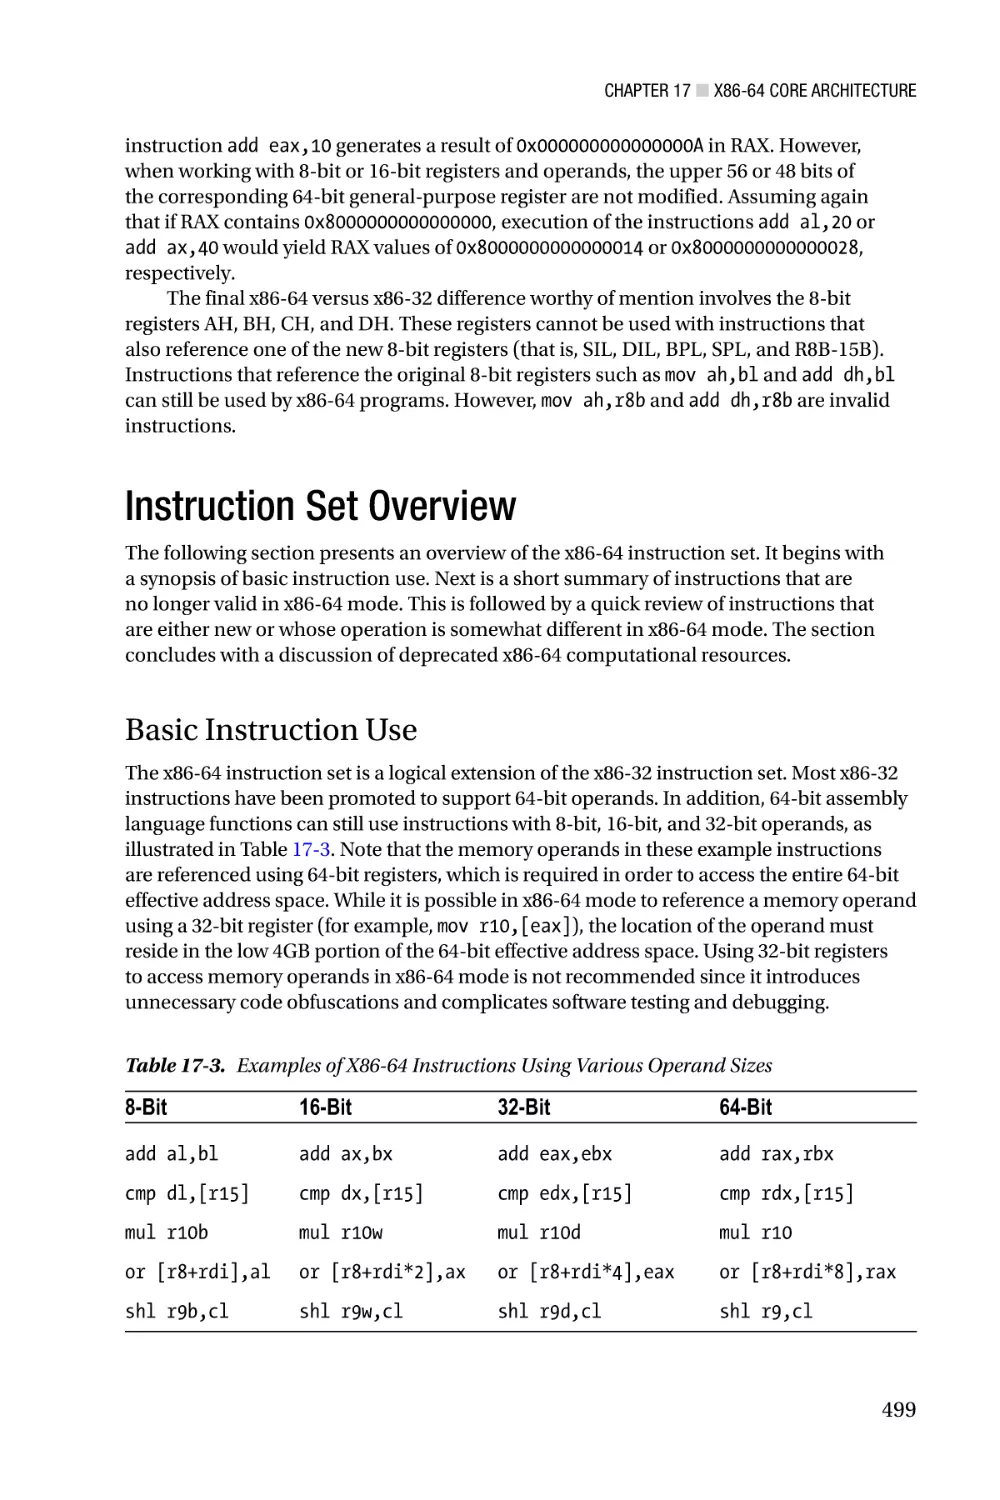 Instruction Set Overview
Basic Instruction Use